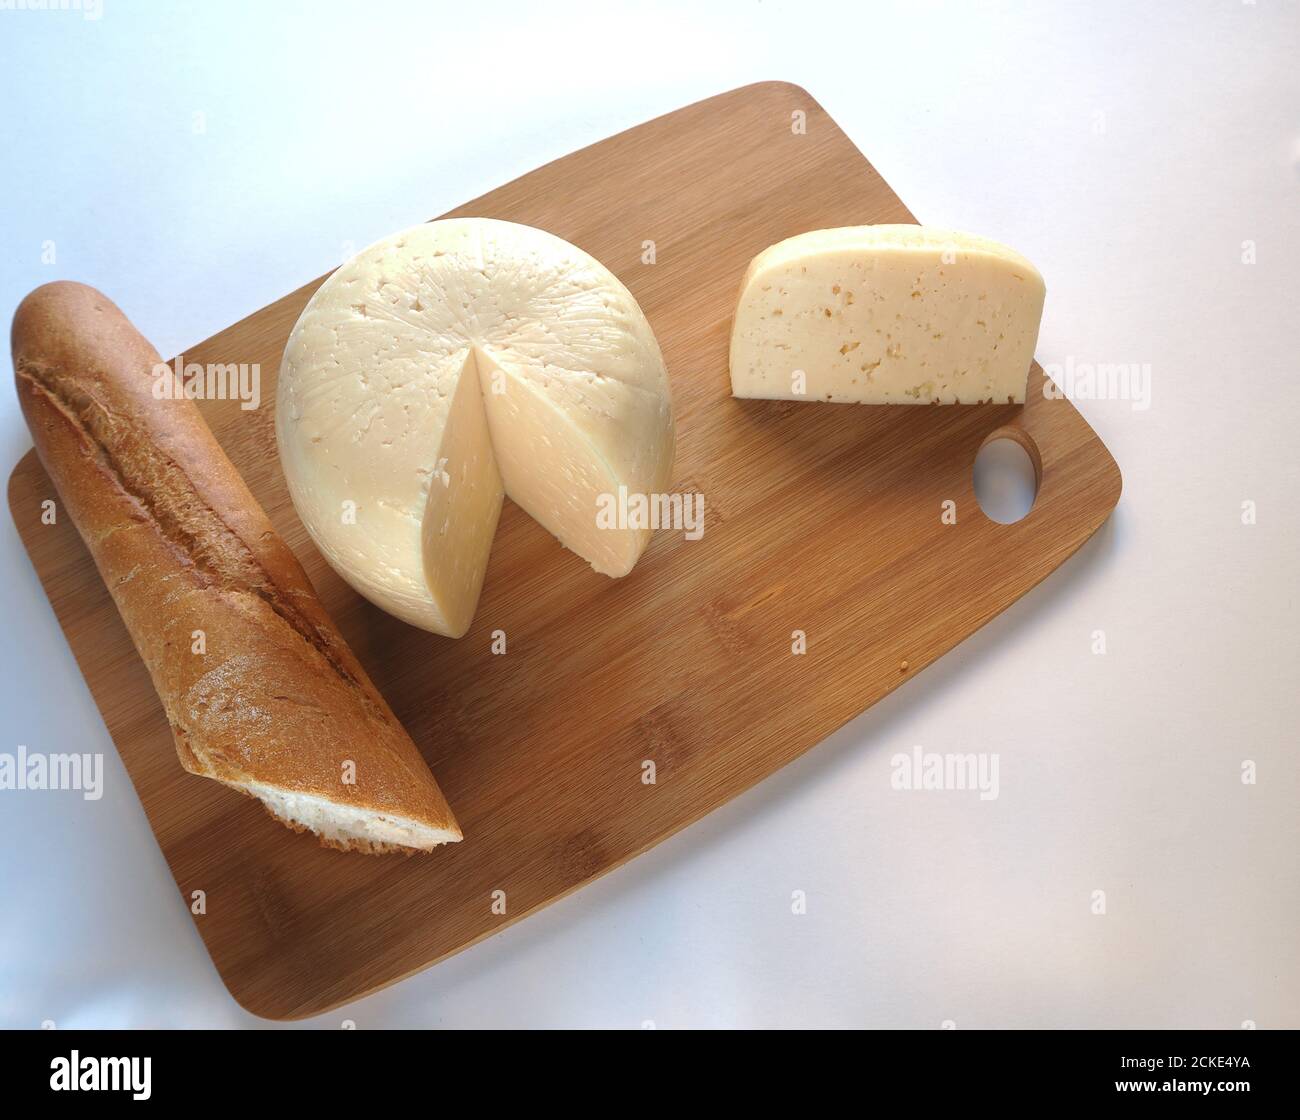 Cabeza redonda de queso con una baguette en un primer plano de madera. Fotografía de alta calidad. Foto de stock